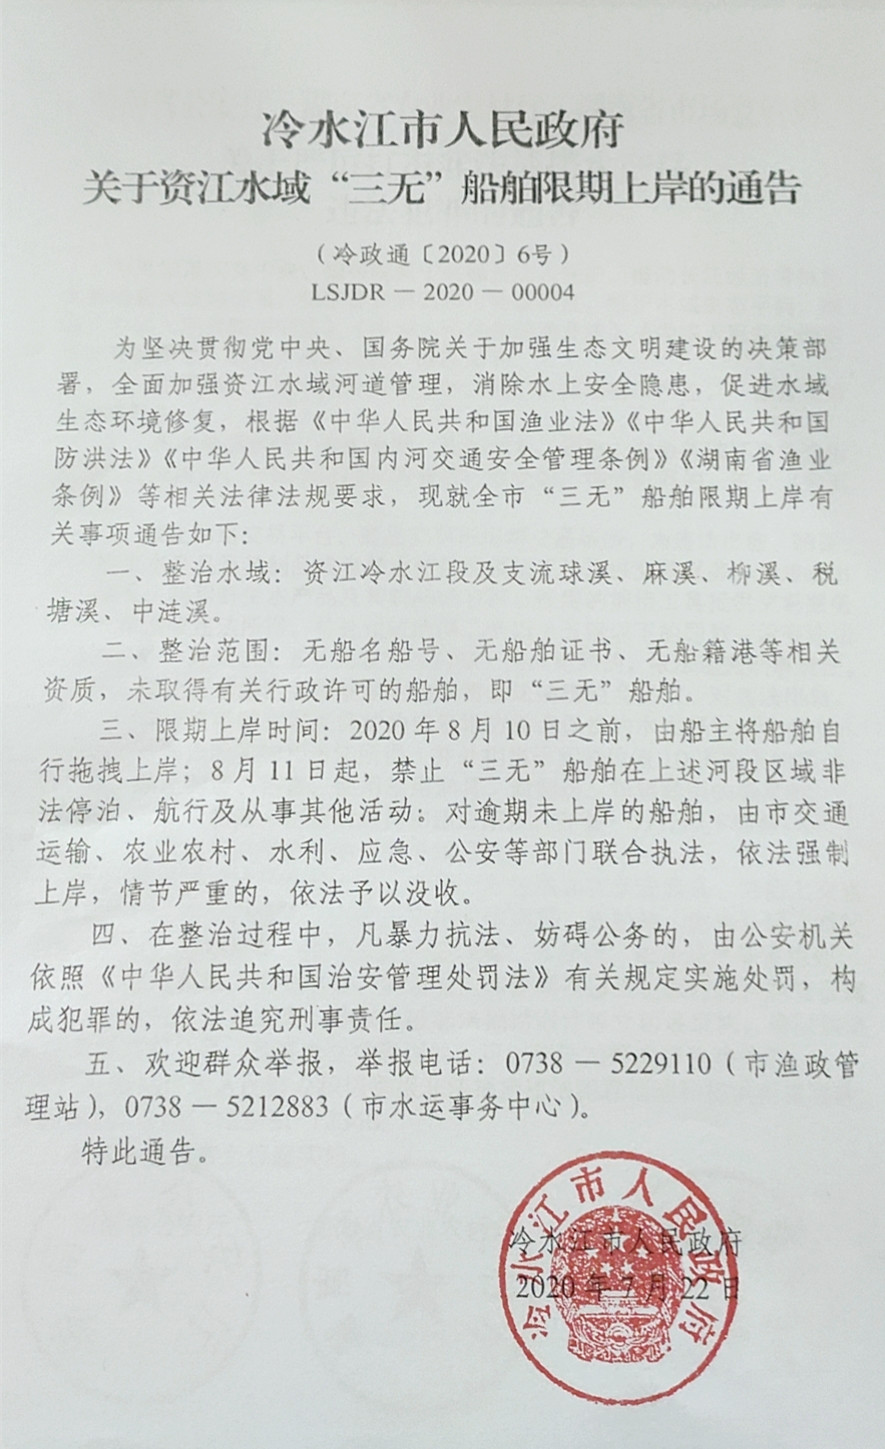 冷水江市人民政府关于资江水域“三无”船舶限期上岸的通告